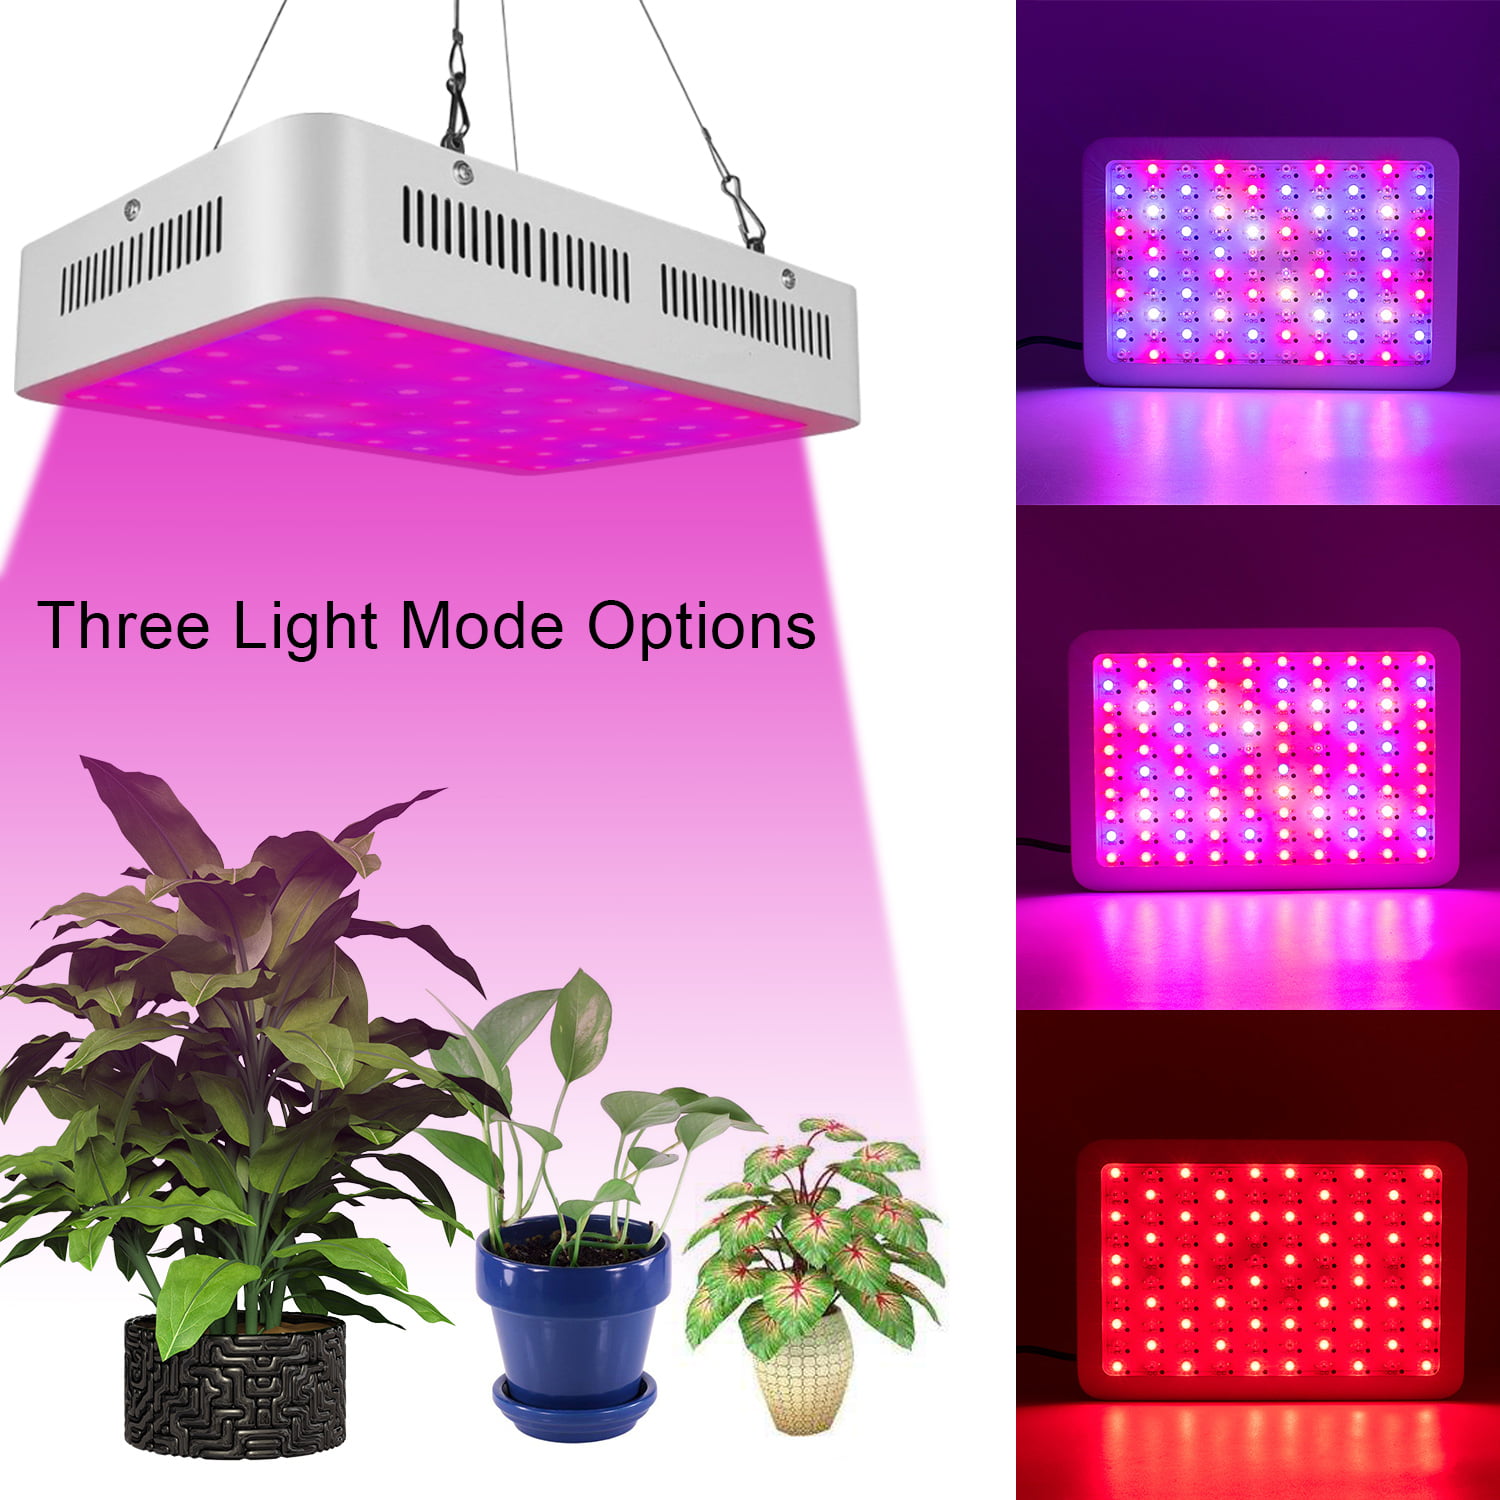 45W-3000W Full Spectrum LED Grow Light Lamp for Indoor Hydro Plant Veg Flower US 